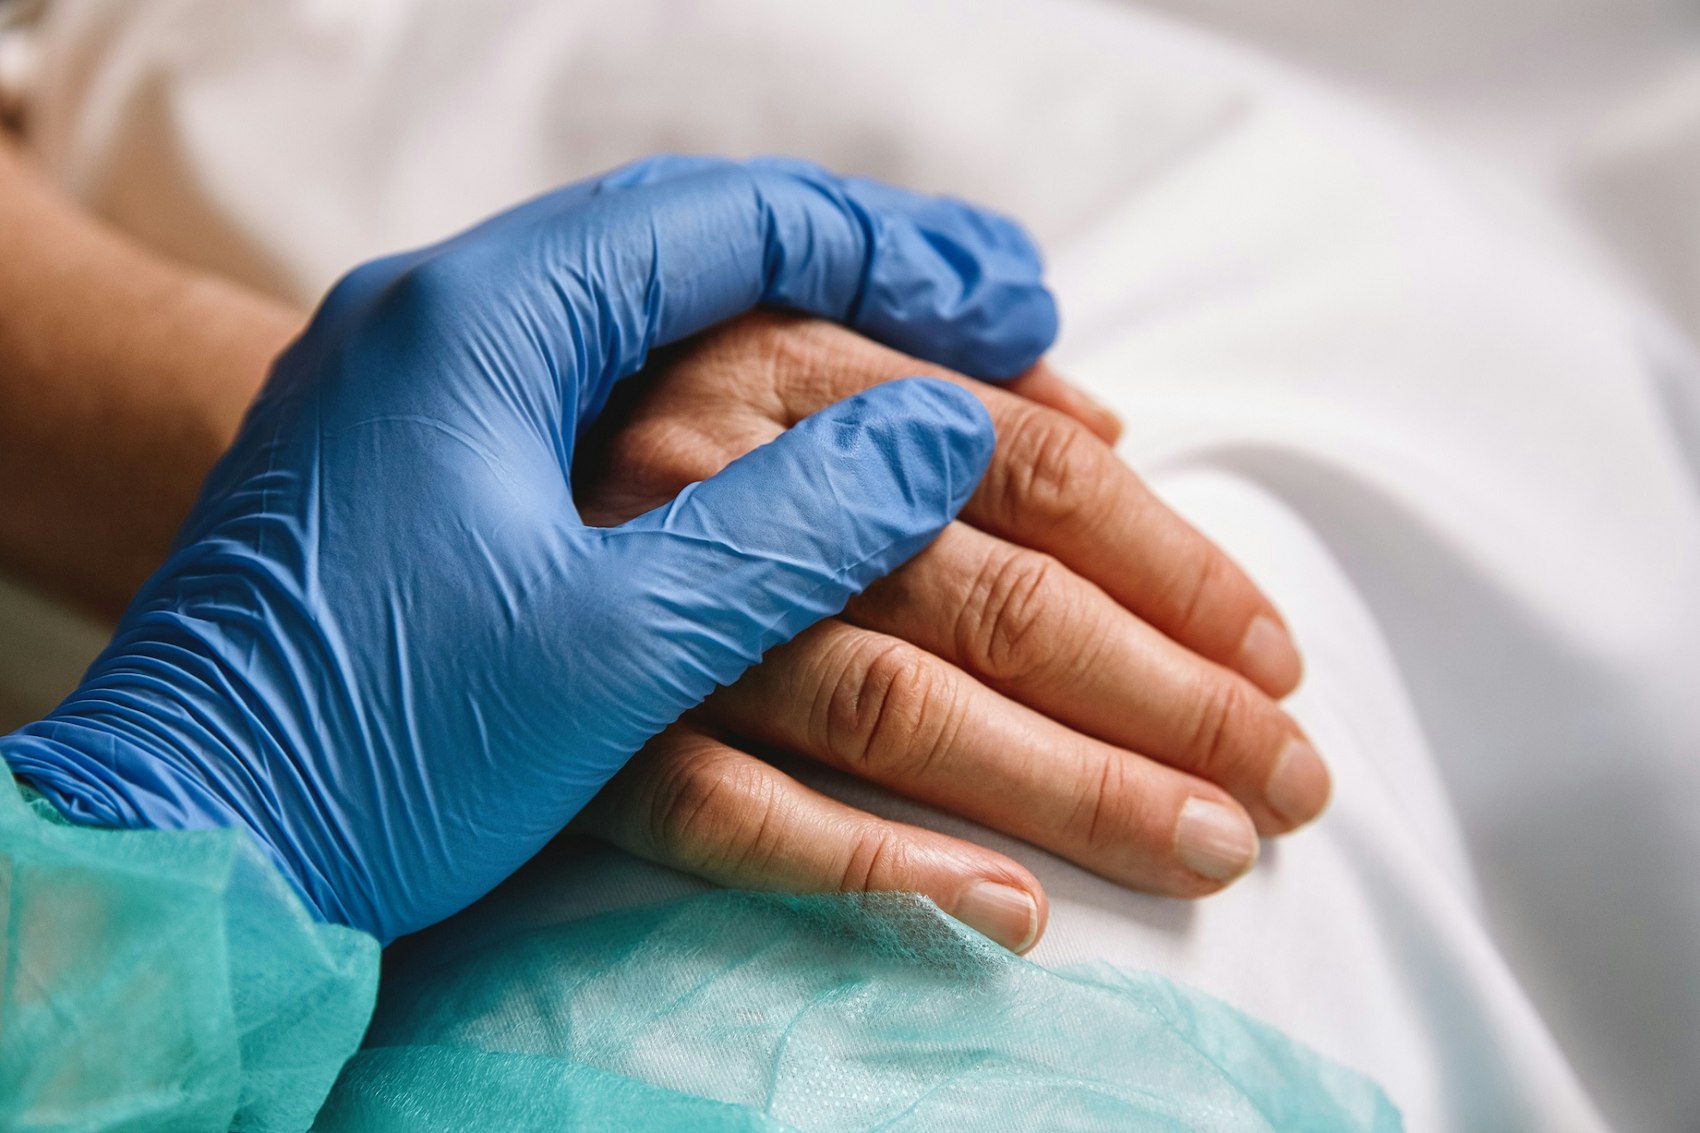 Die Hand einer medizinischen Fachkraft liegt auf der eines Patienten.